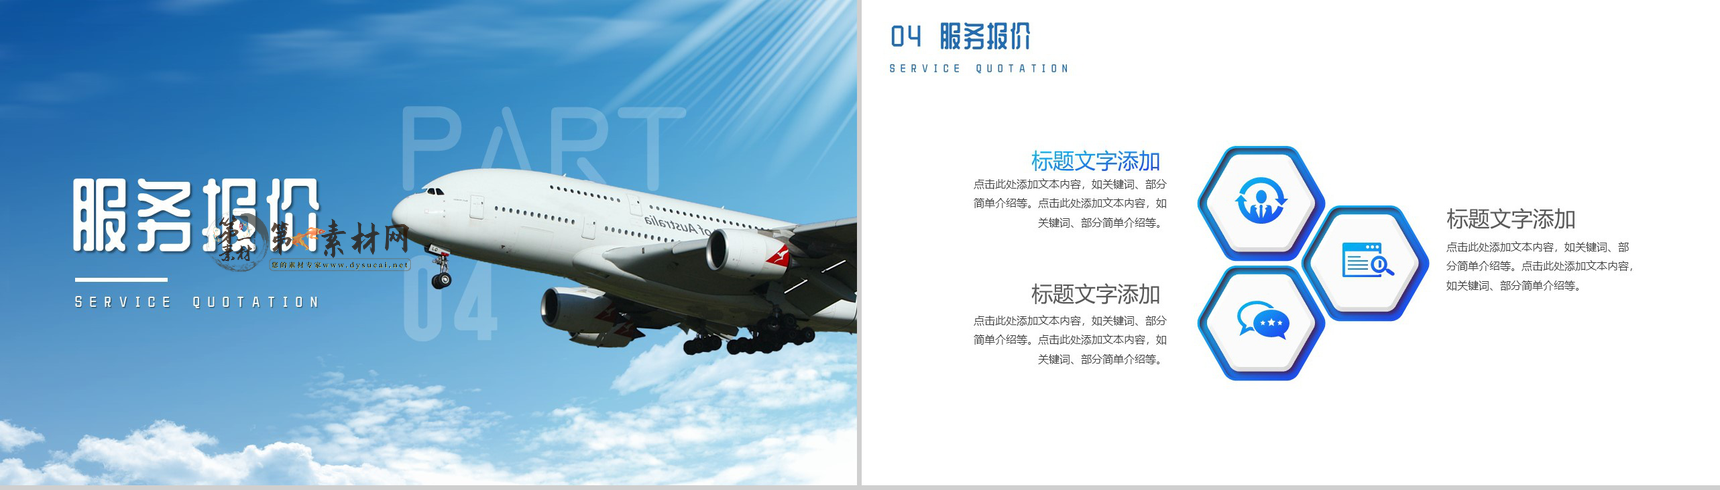 蓝色简约航空公司飞机型号介绍PPT模板-8